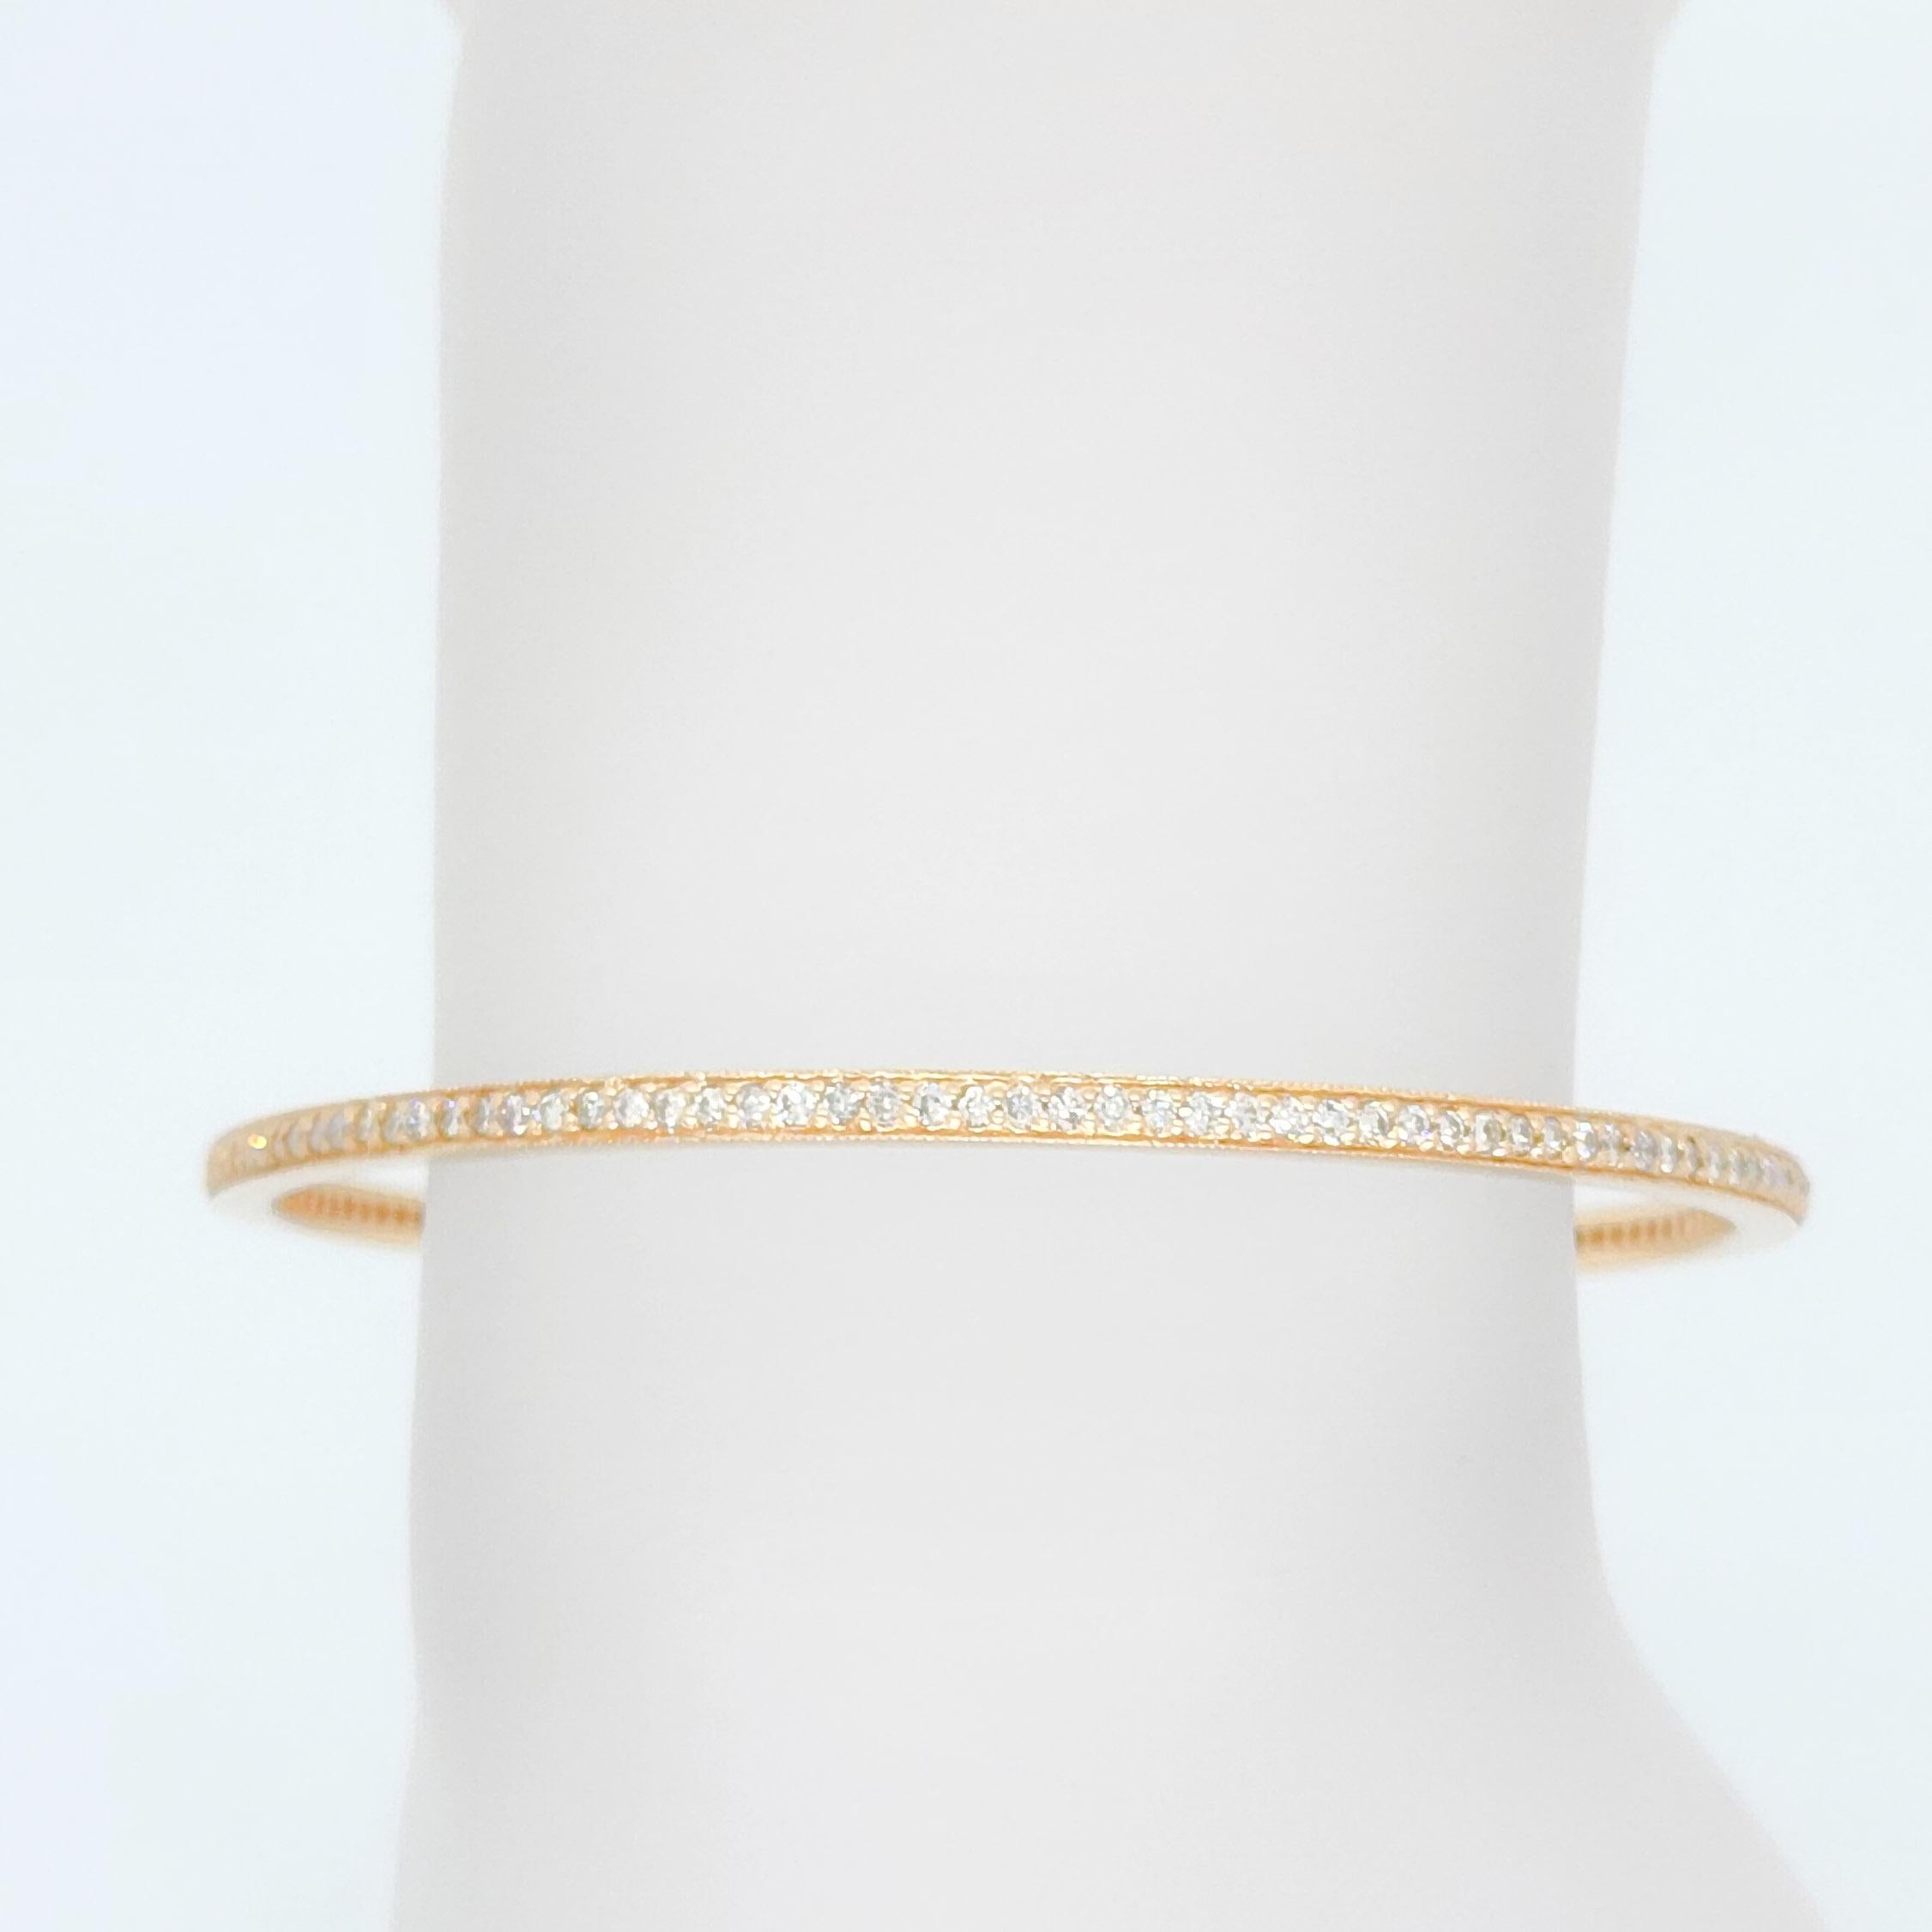 Magnifiques diamants blancs ronds de 2,25 ct. dans ce bracelet en or rose 14k fait à la main.  Les diamants font tout le tour du bracelet.  Facile à empiler ou à porter seul.